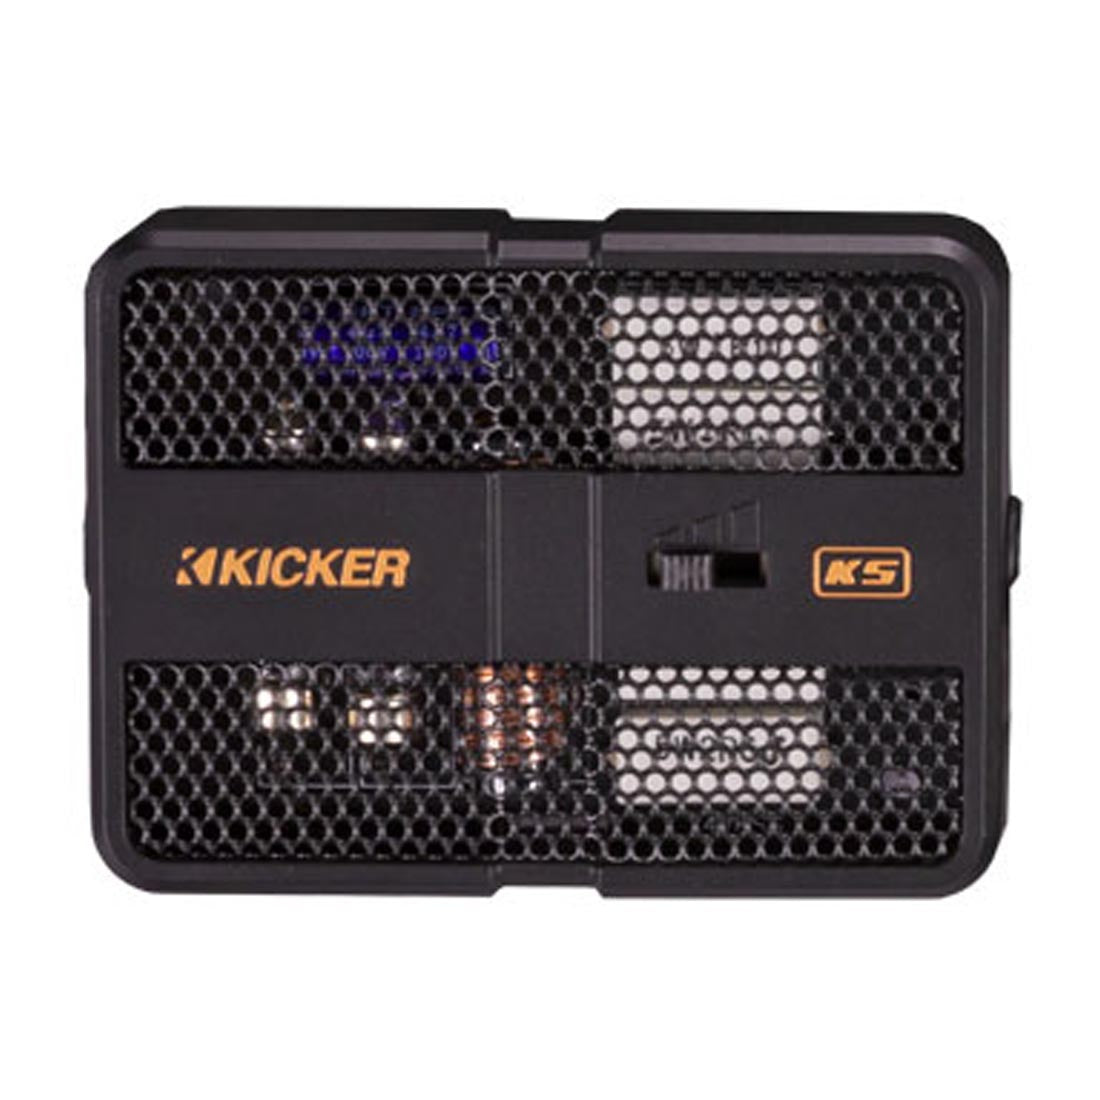 Kicker 51KSS6904 KS Series 6x9" Car Audio Component Speaker System crossover